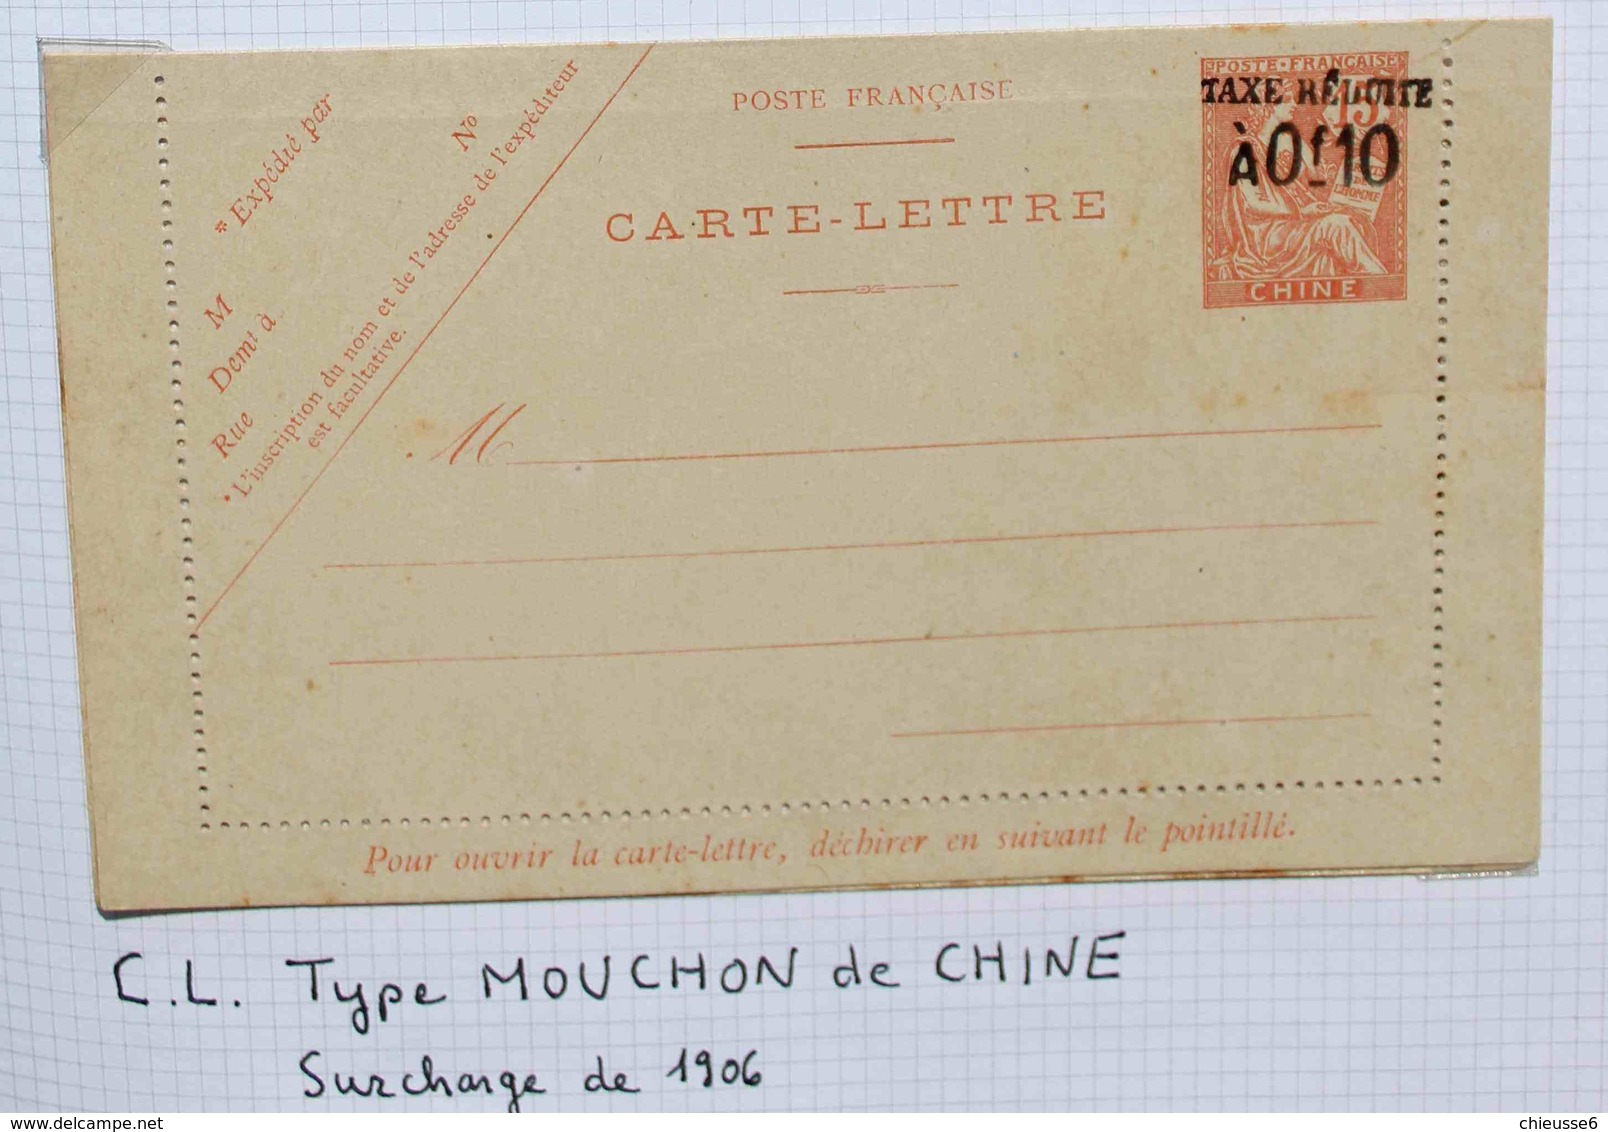 Chine - C.L  Type Mouchon  CHINE  - Taxe Réduite A 0F10 - Briefe U. Dokumente